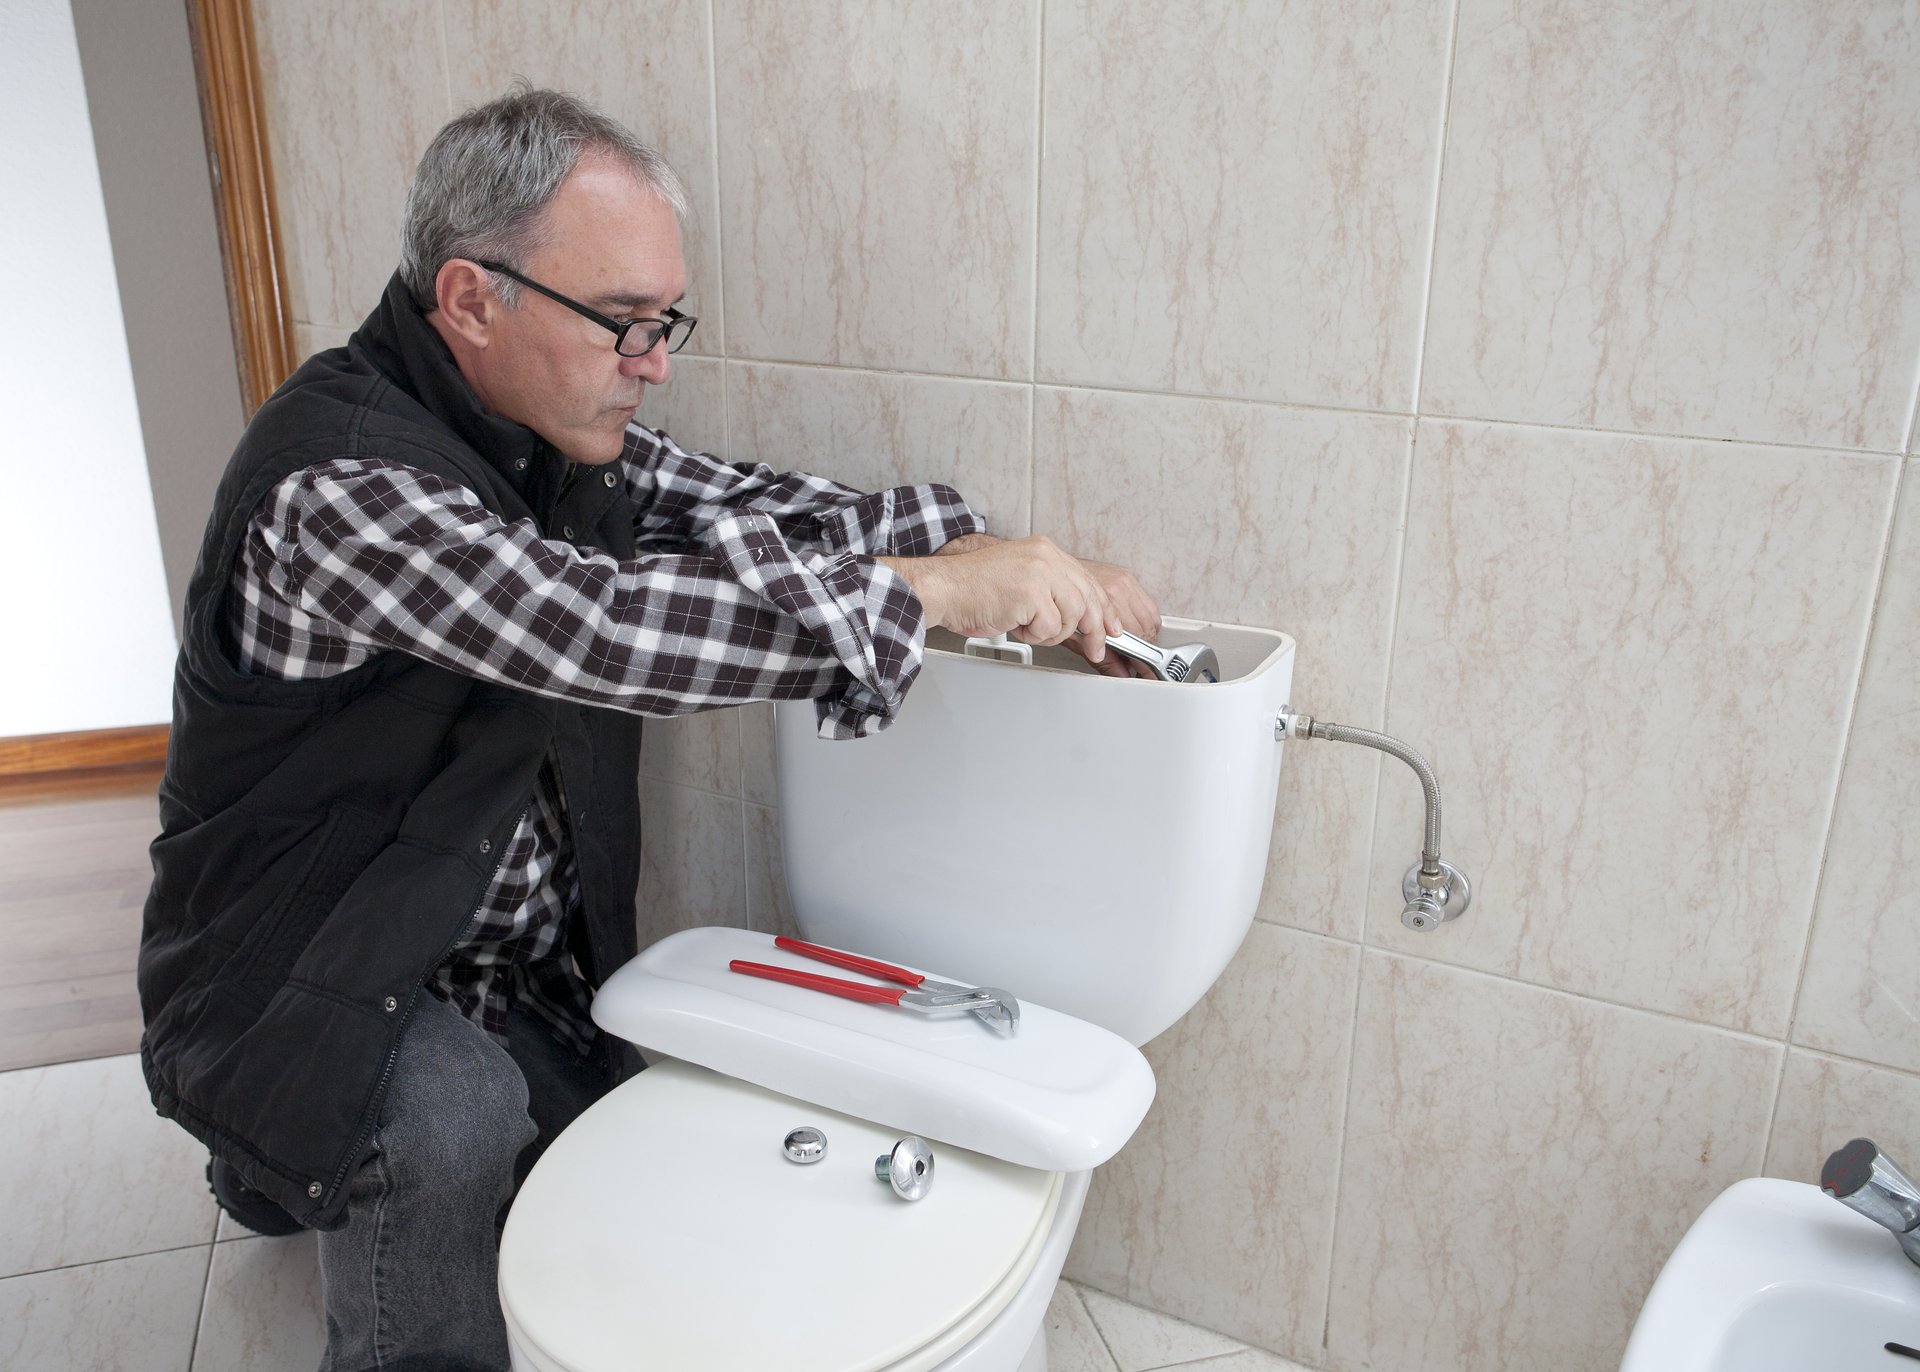 Plumber repairing a toilet